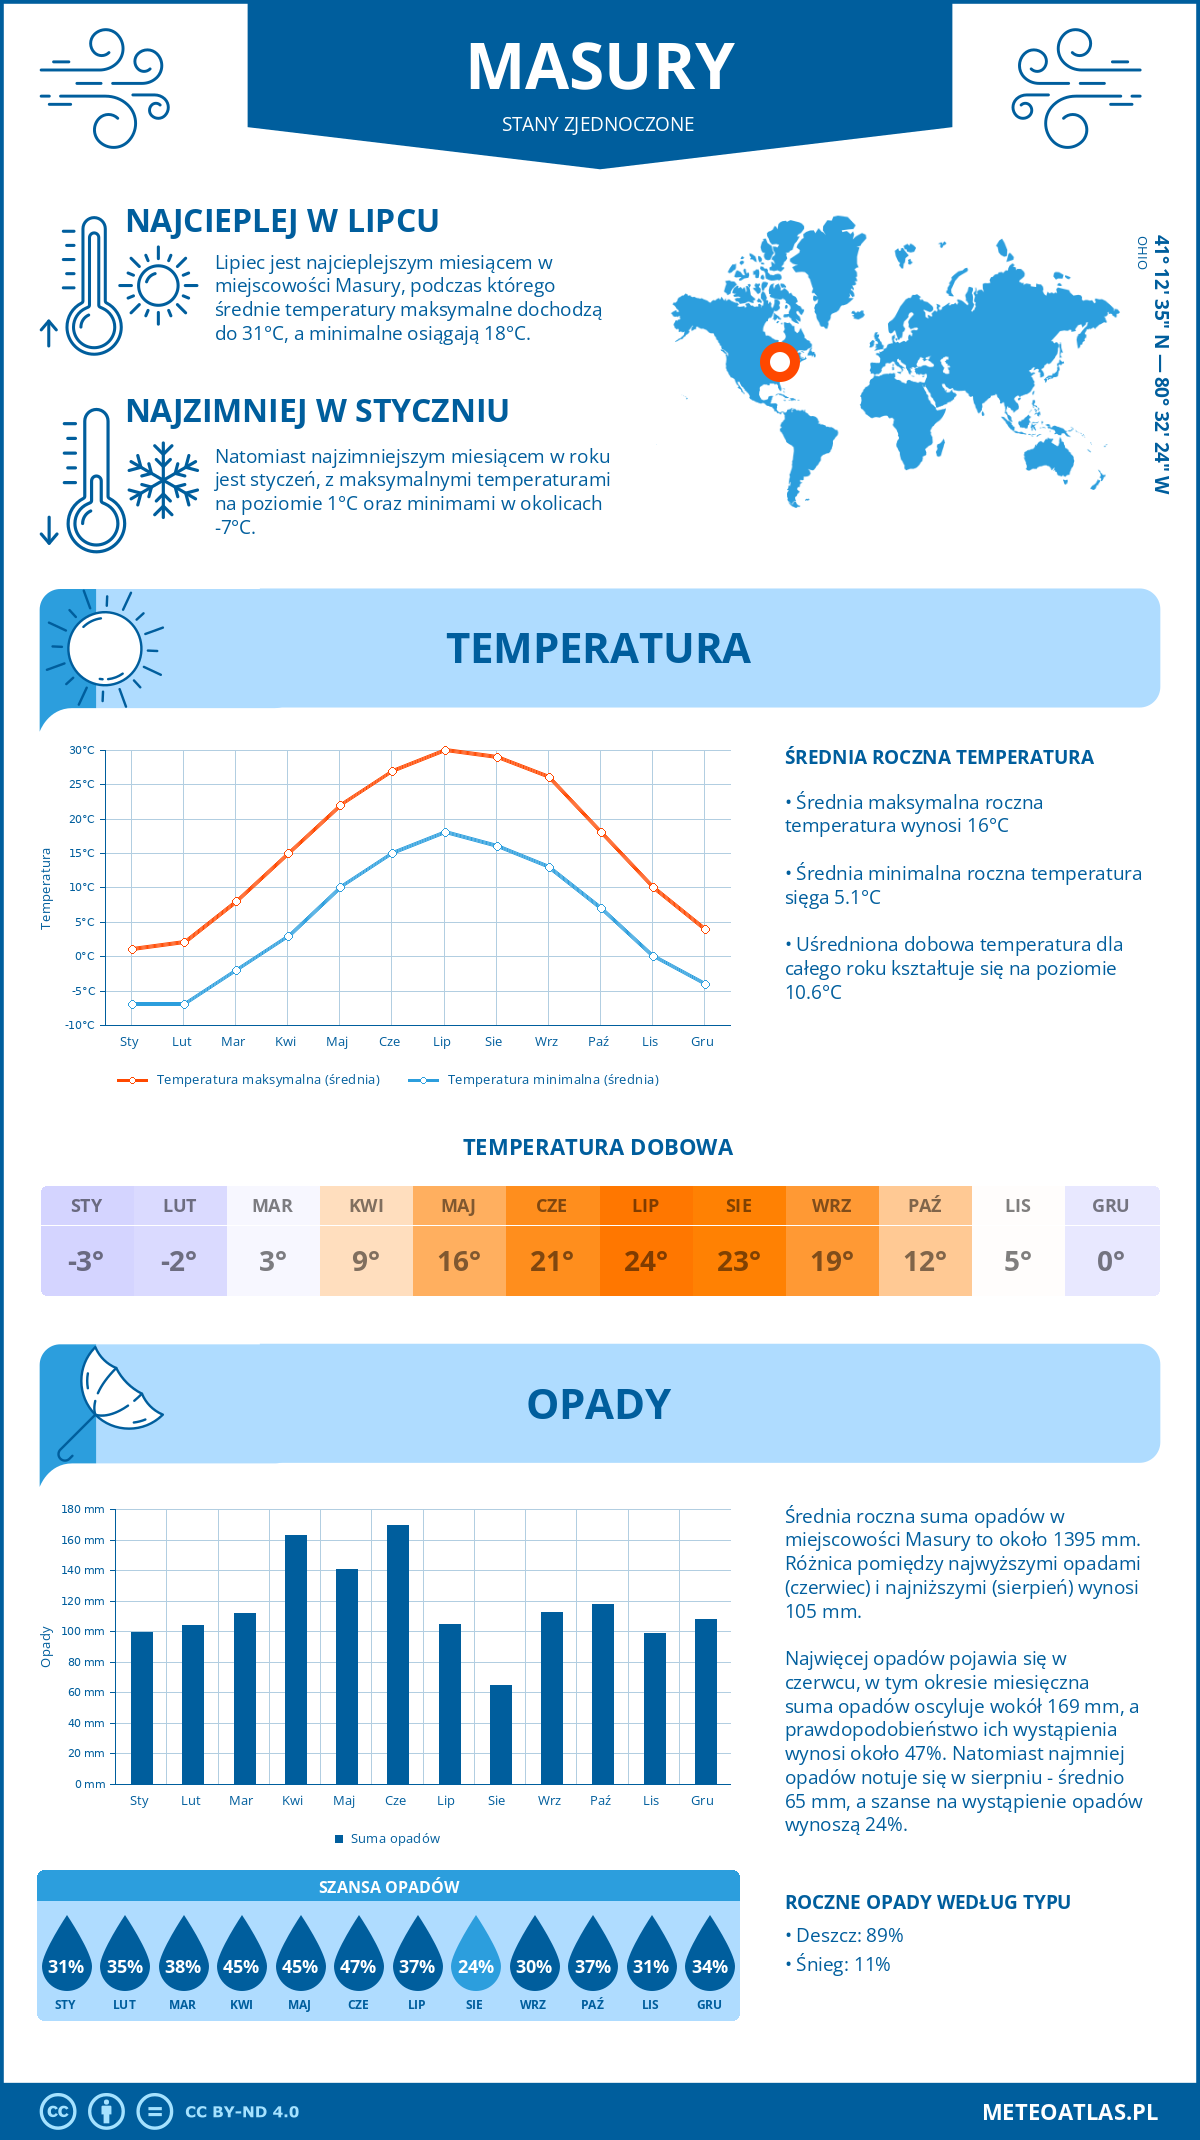 Pogoda Masury (Stany Zjednoczone). Temperatura oraz opady.